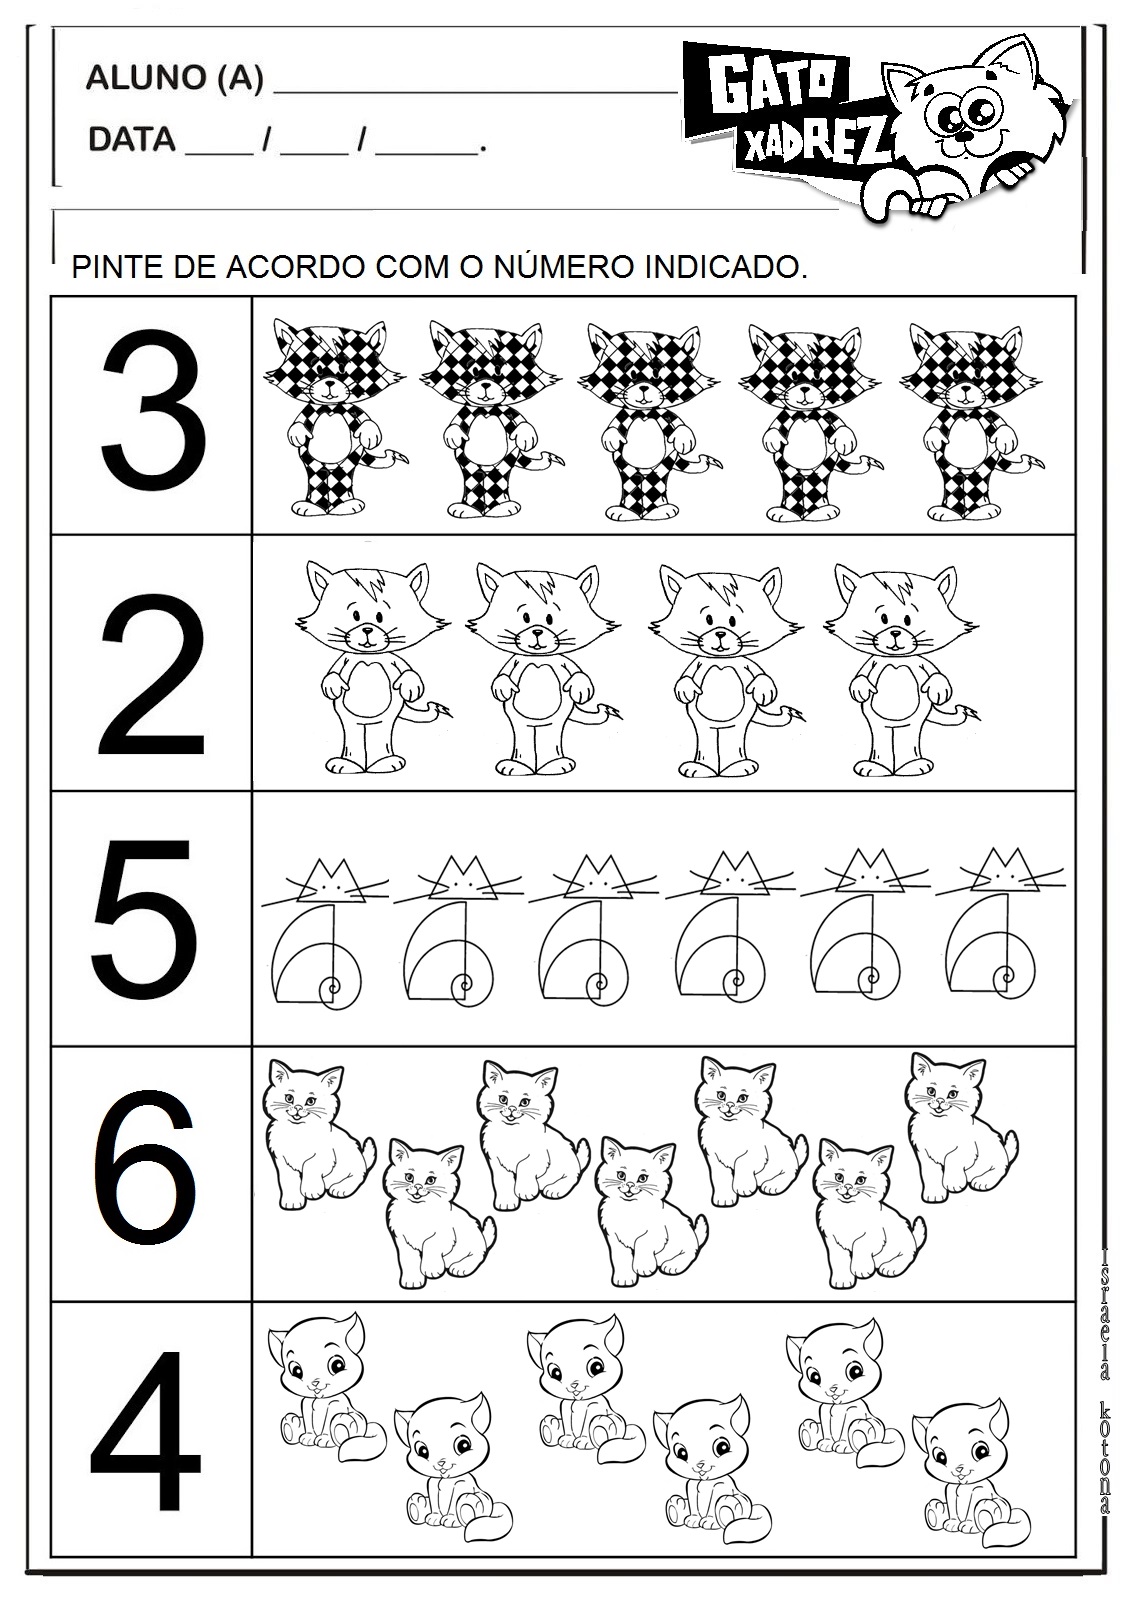 Sequencia didática - O gato xadrez  Gato xadrez, Xadrez historia, Gatos